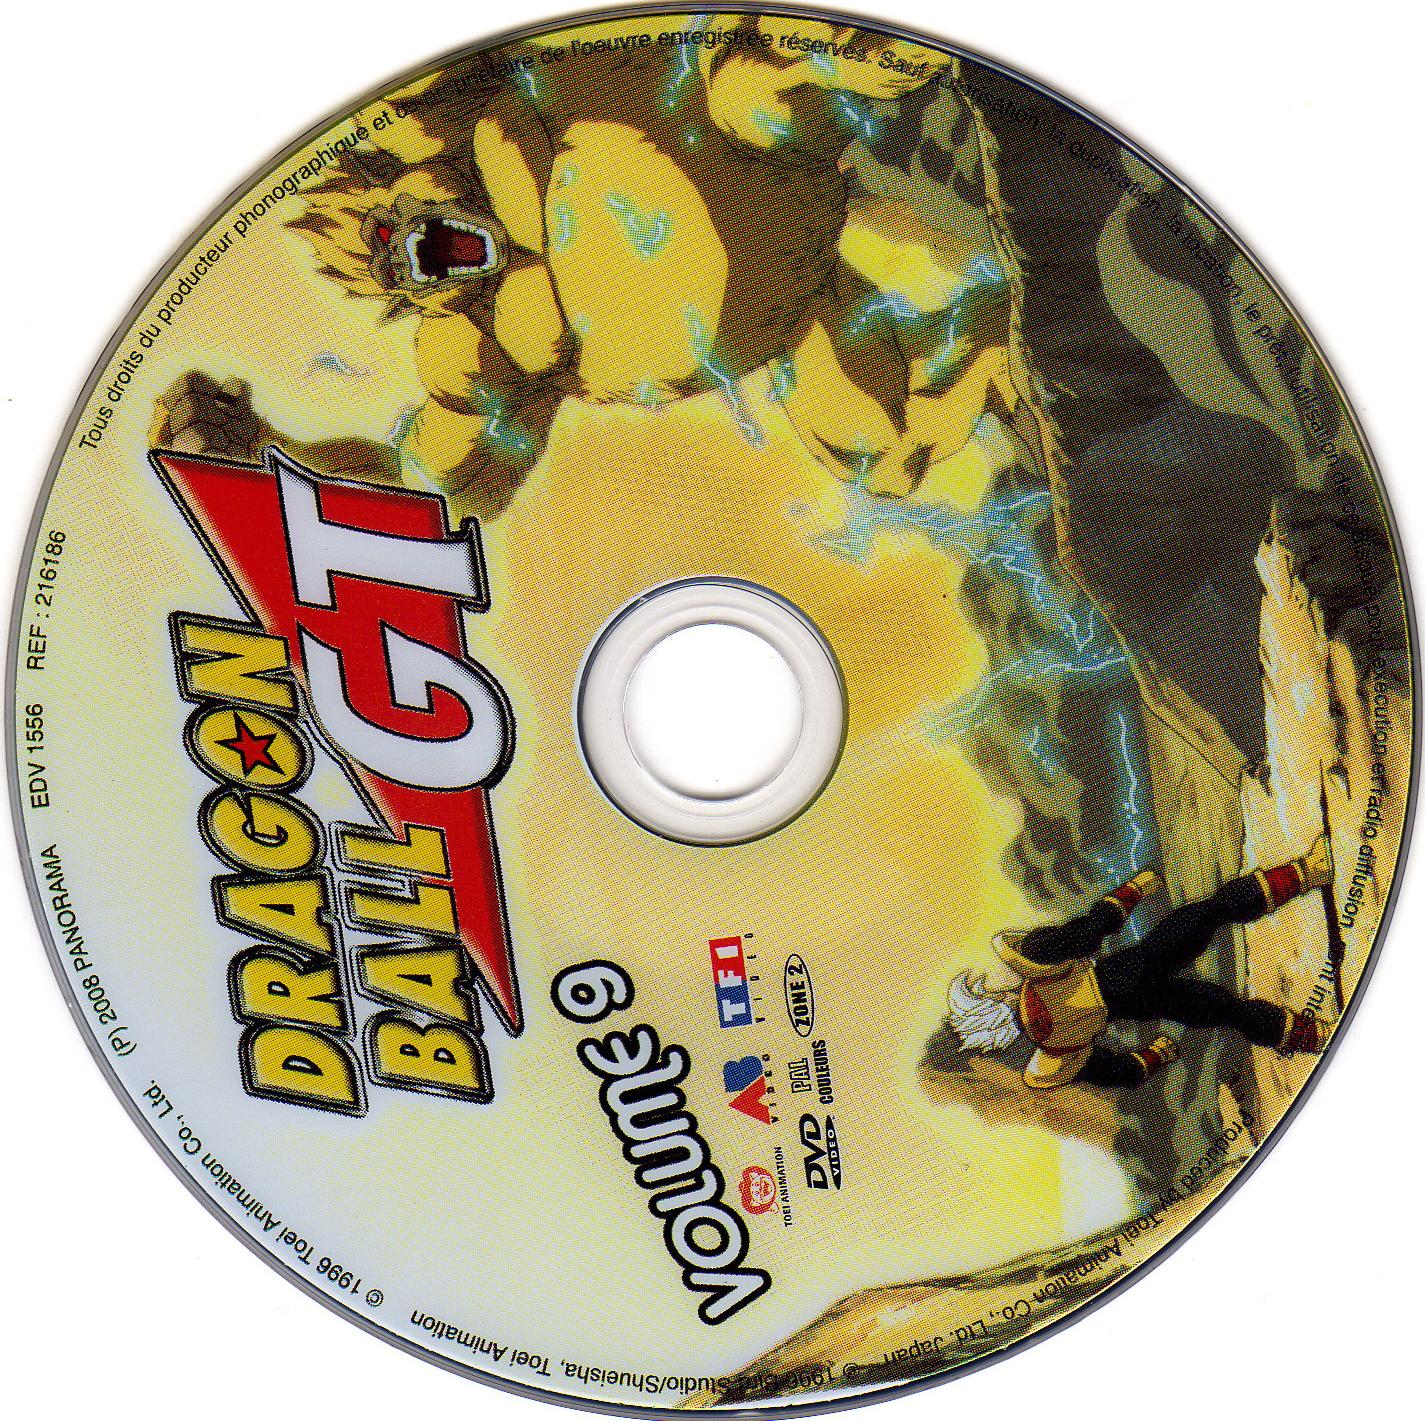 Dragon ball GT vol 09